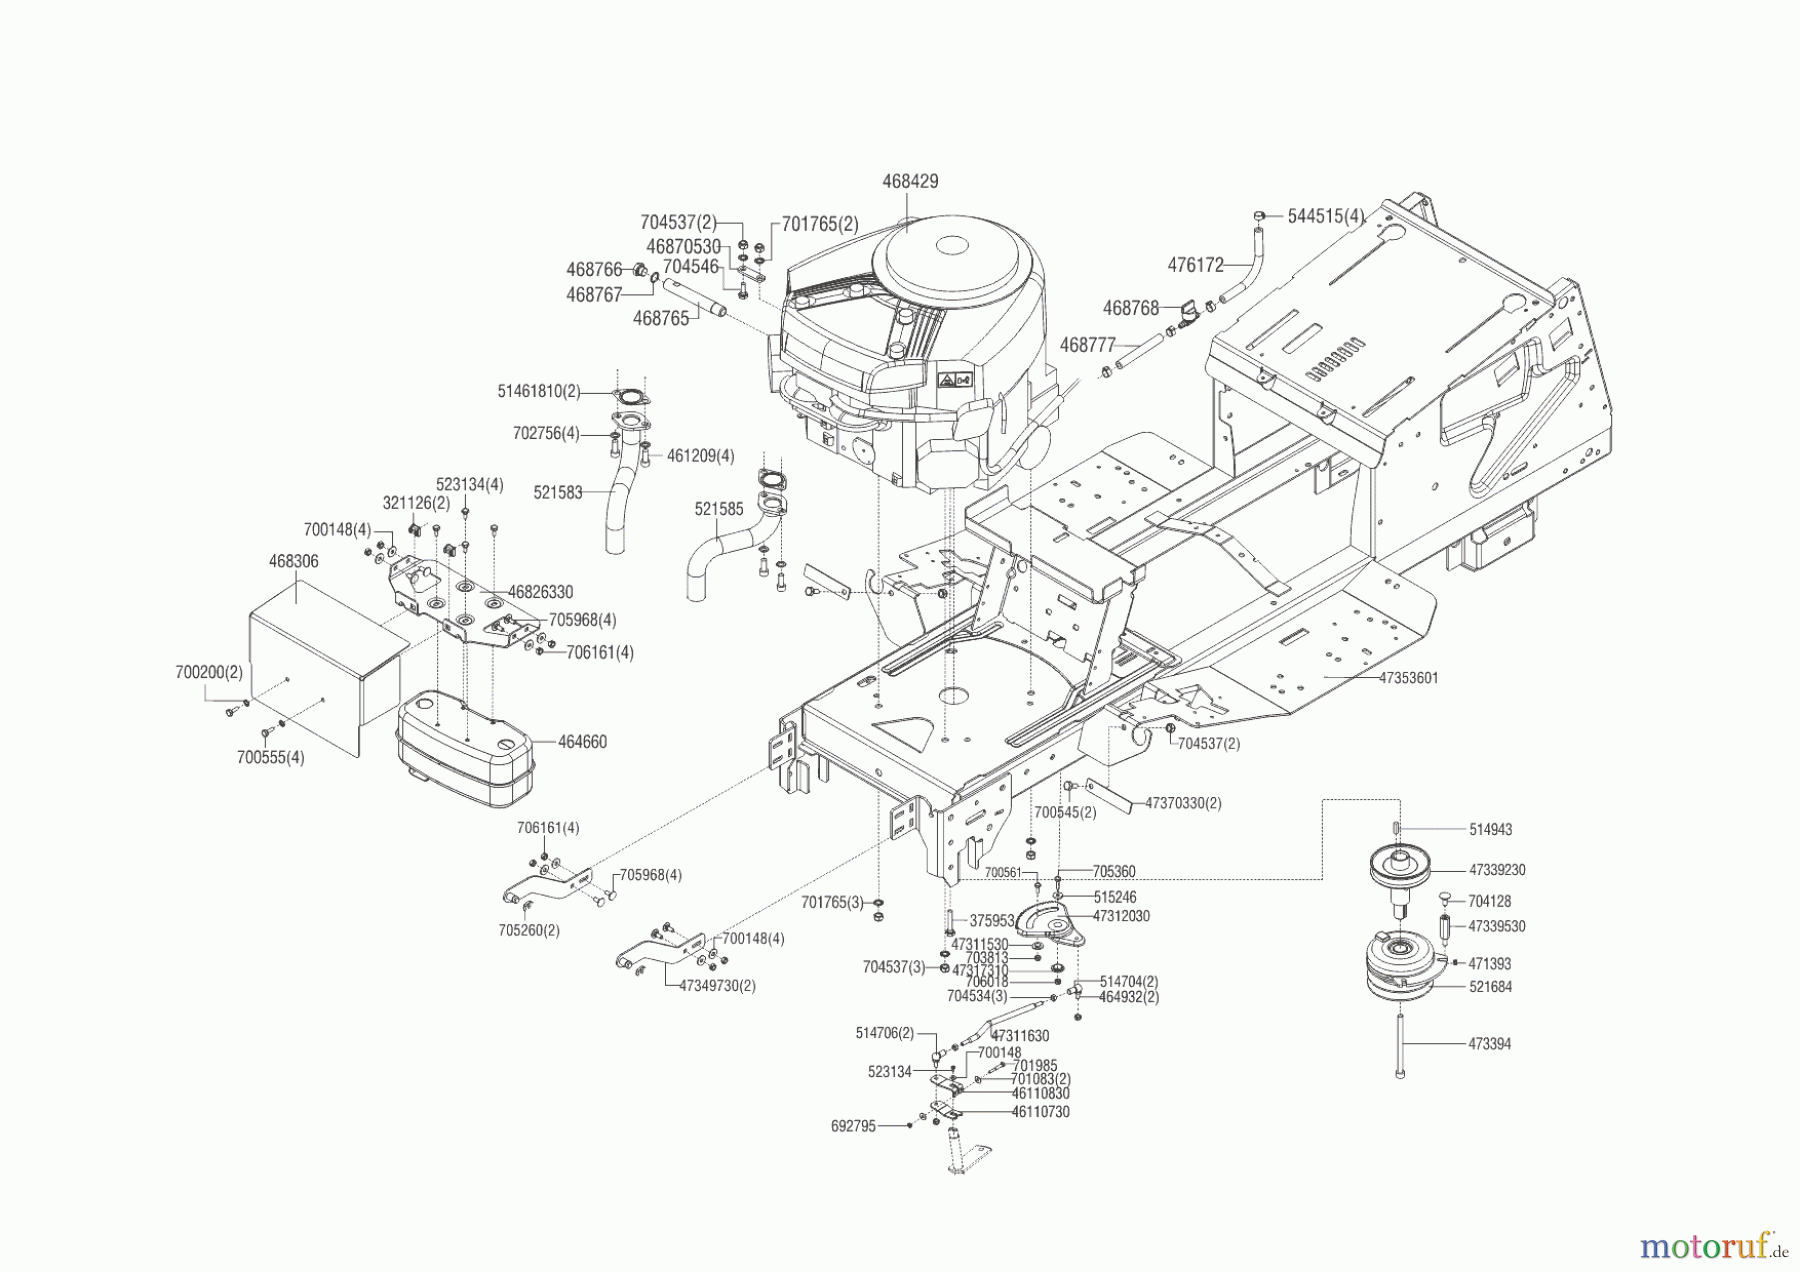  Powerline Gartentechnik Rasentraktor T23-125.4 HD V2 (ohne Mähwerk)  02/2014 Seite 2